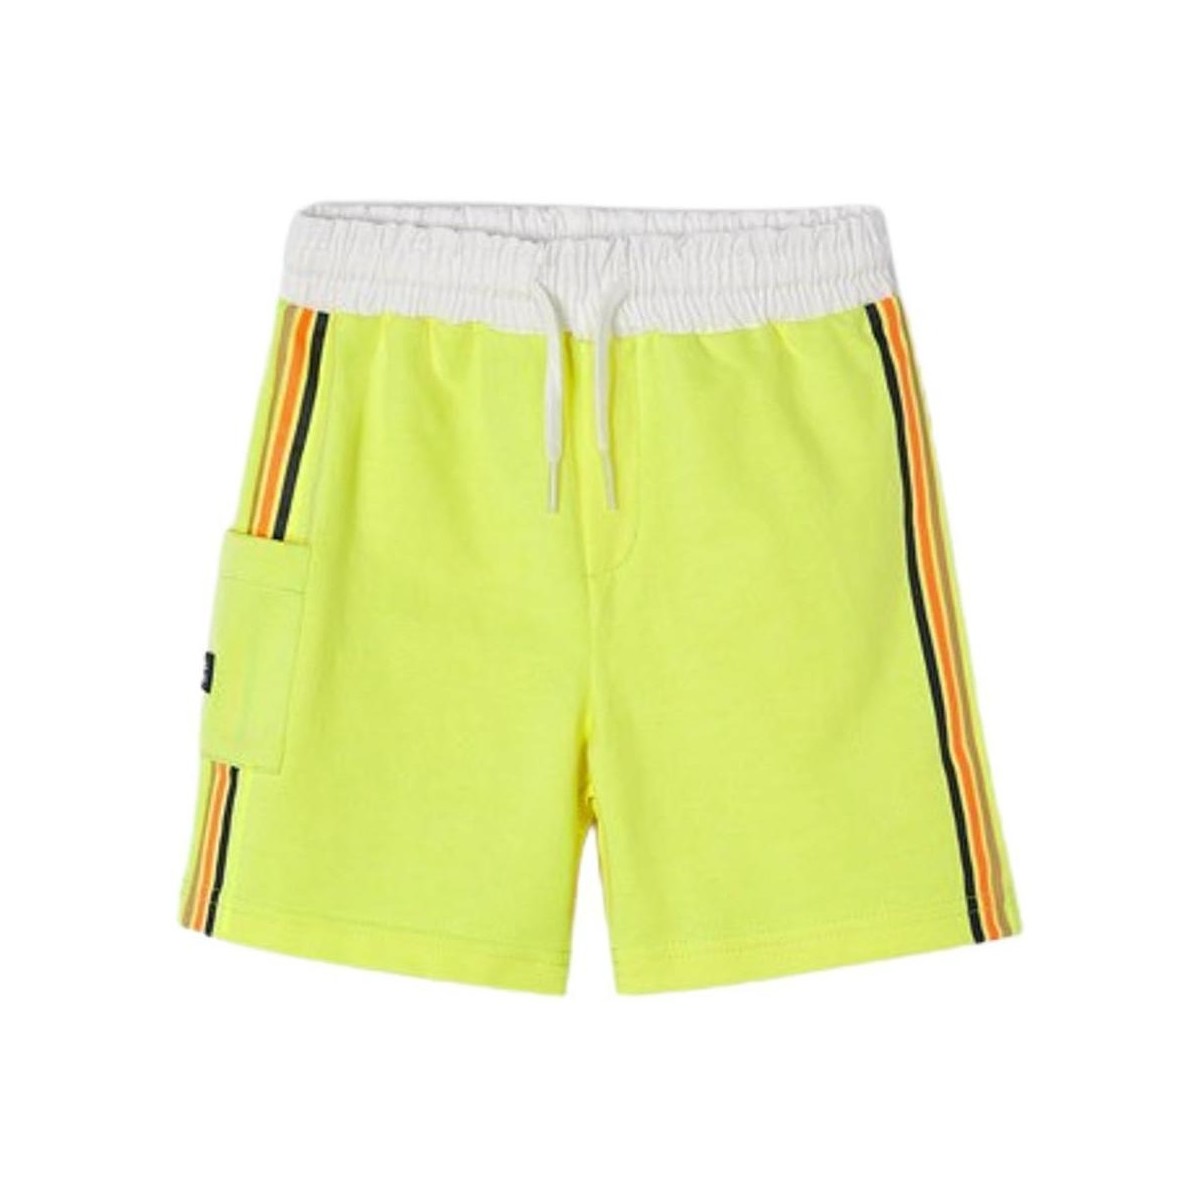 Kleidung Jungen Shorts / Bermudas Mayoral  Gelb